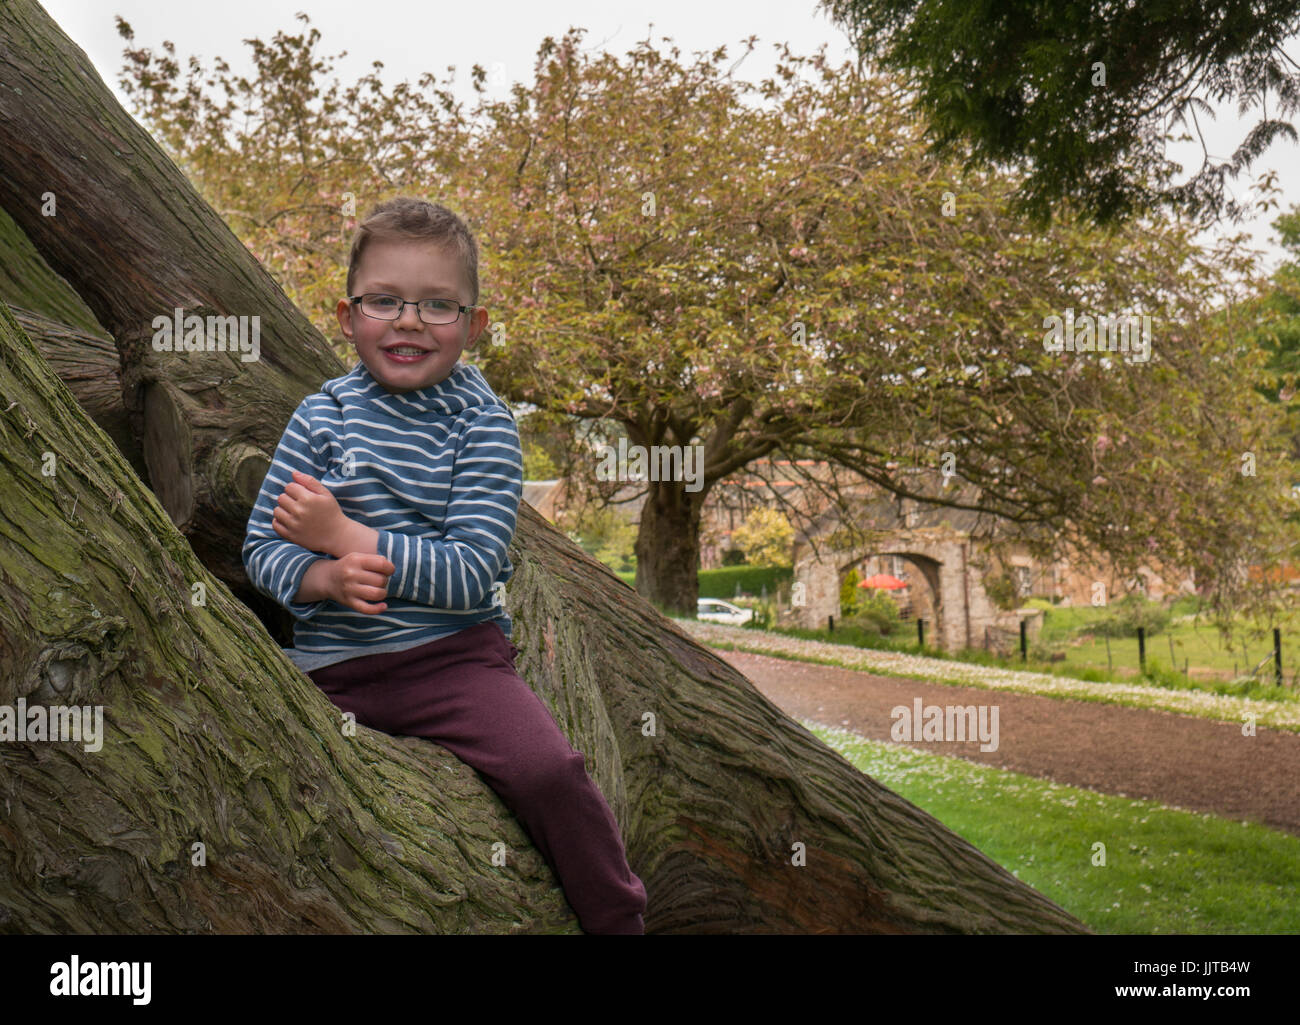 Junge Kind lächelnd und sitzen in einem alten Baum, dirleton Castle Grounds, East Lothian, Schottland, Großbritannien Stockfoto